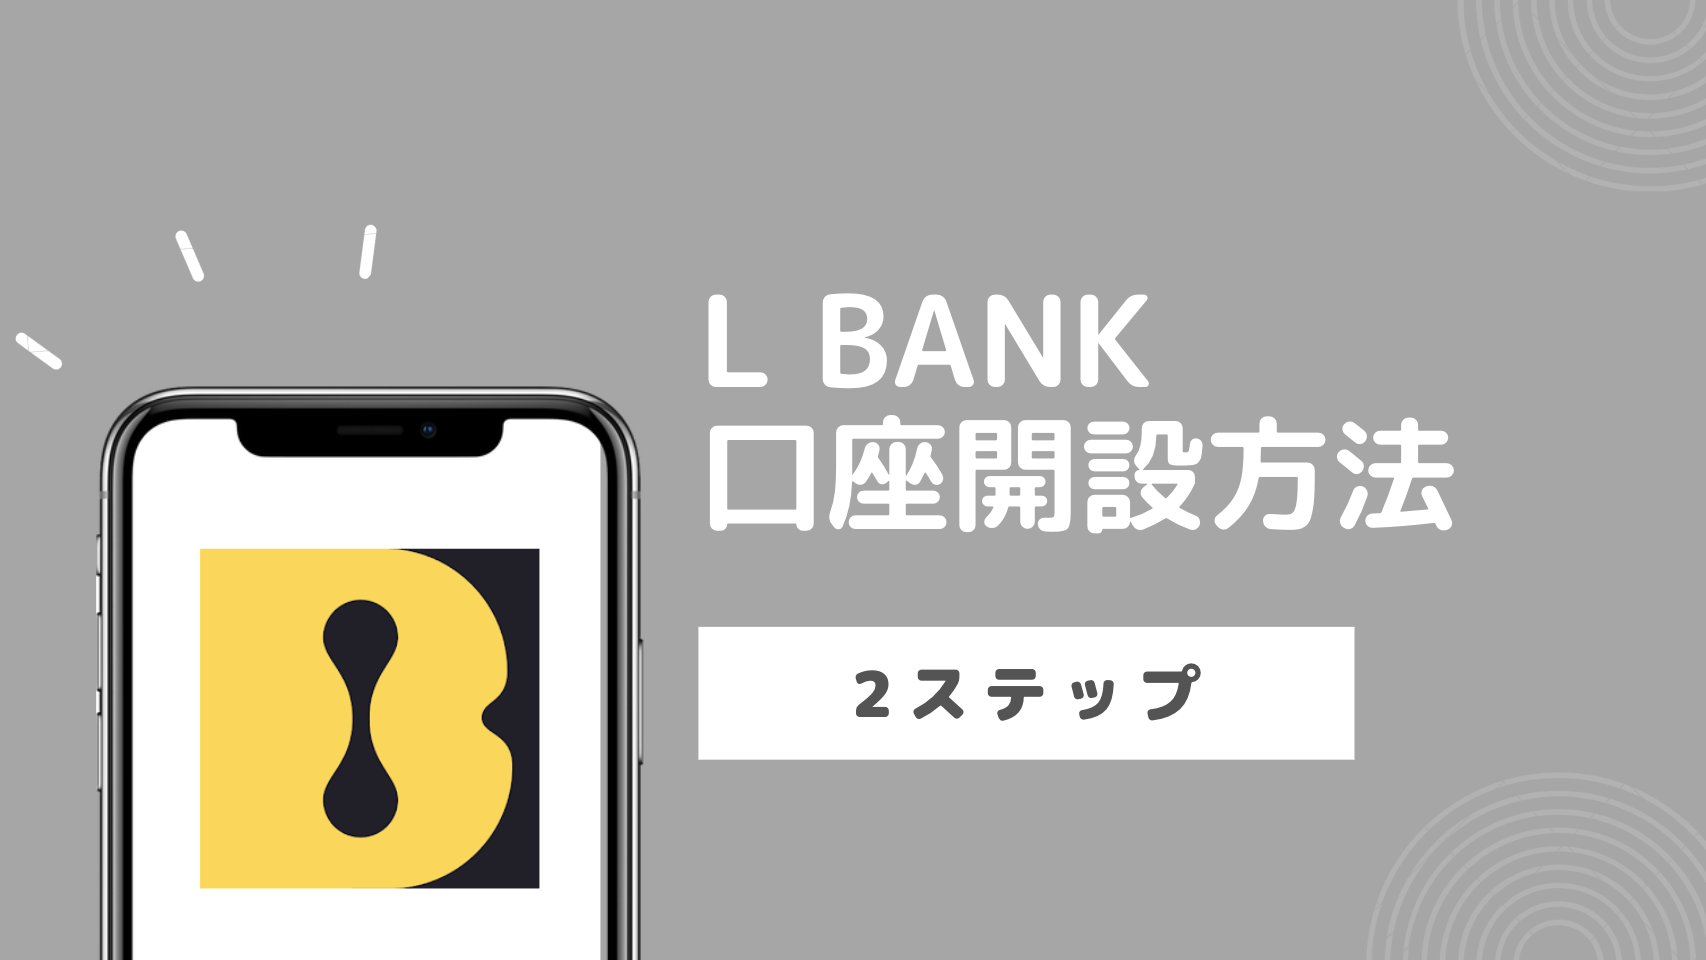 【初心者向け】海外取引所LBankの口座開設方法